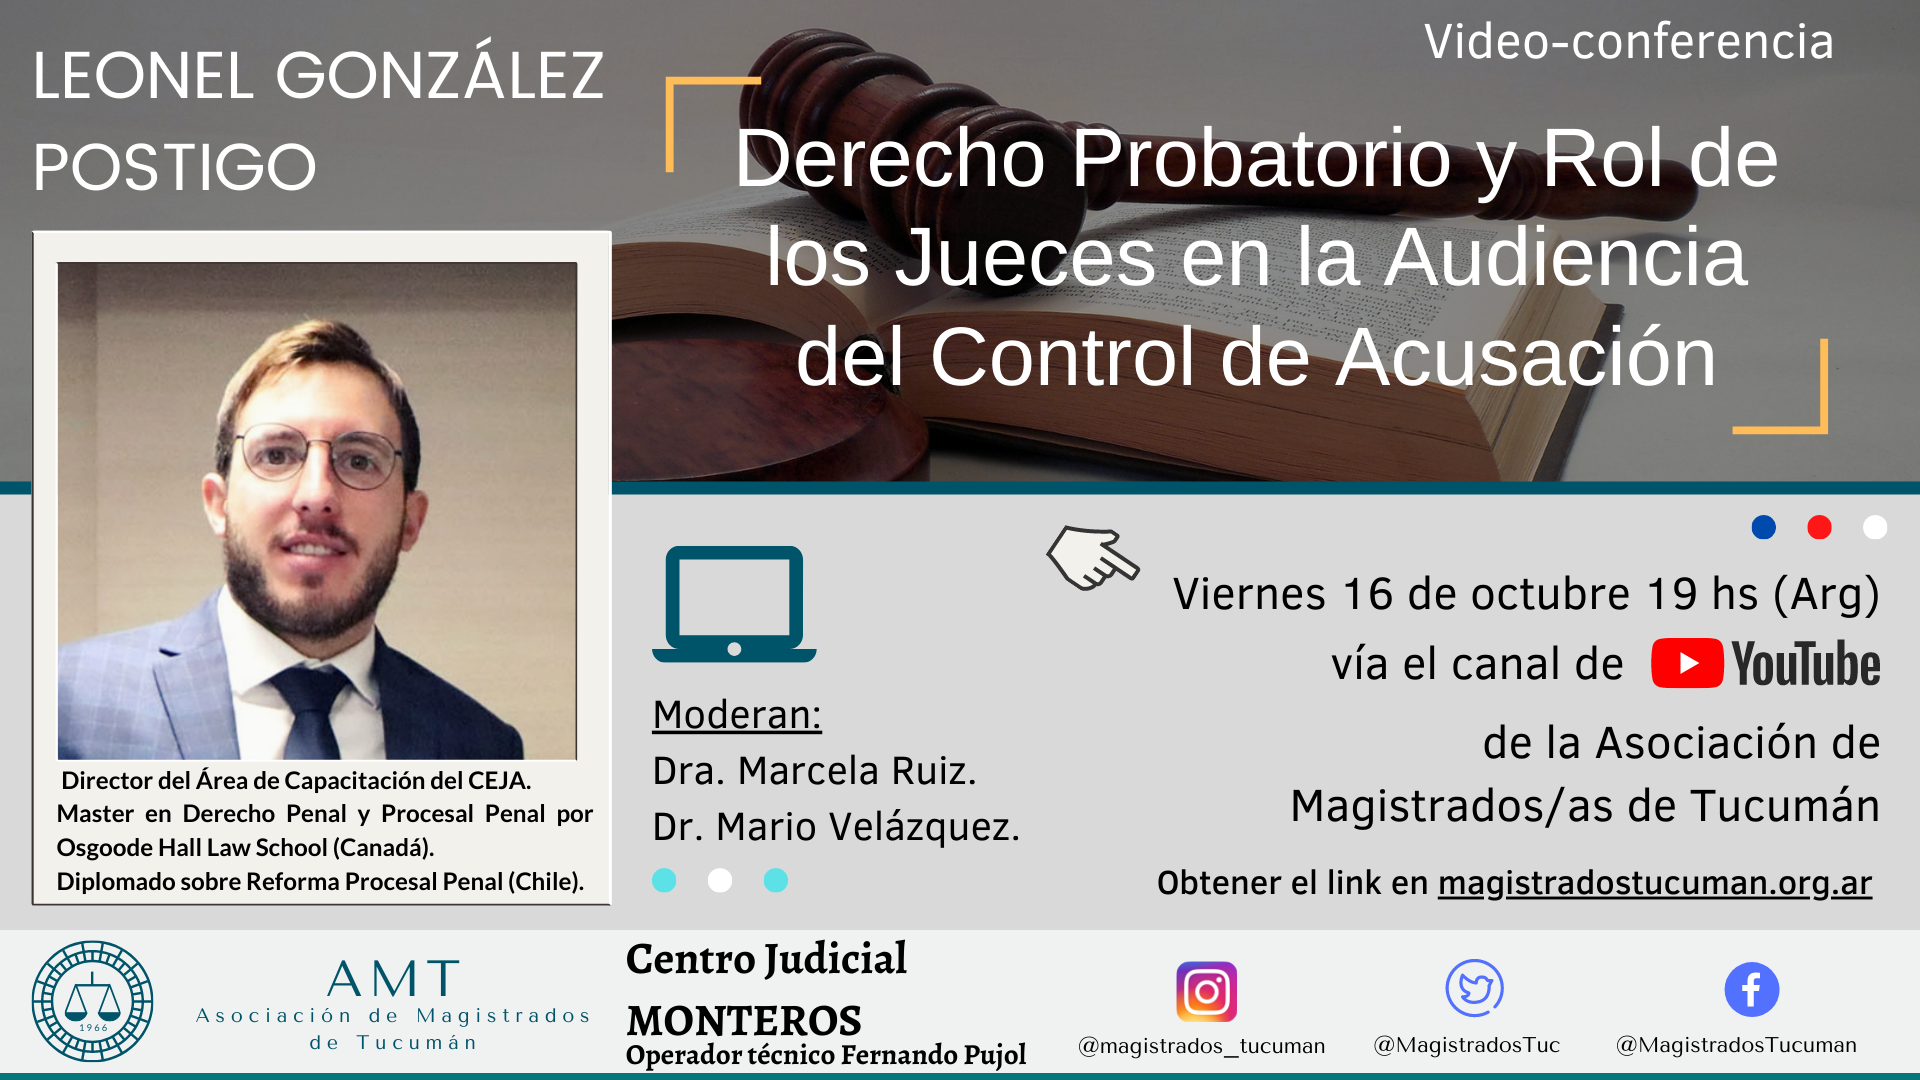 Vuelva a ver la conferencia de Leonel González Postigo «Derecho Probatorio y Rol de los Jueces en la Audiencia de Control de Acusación»